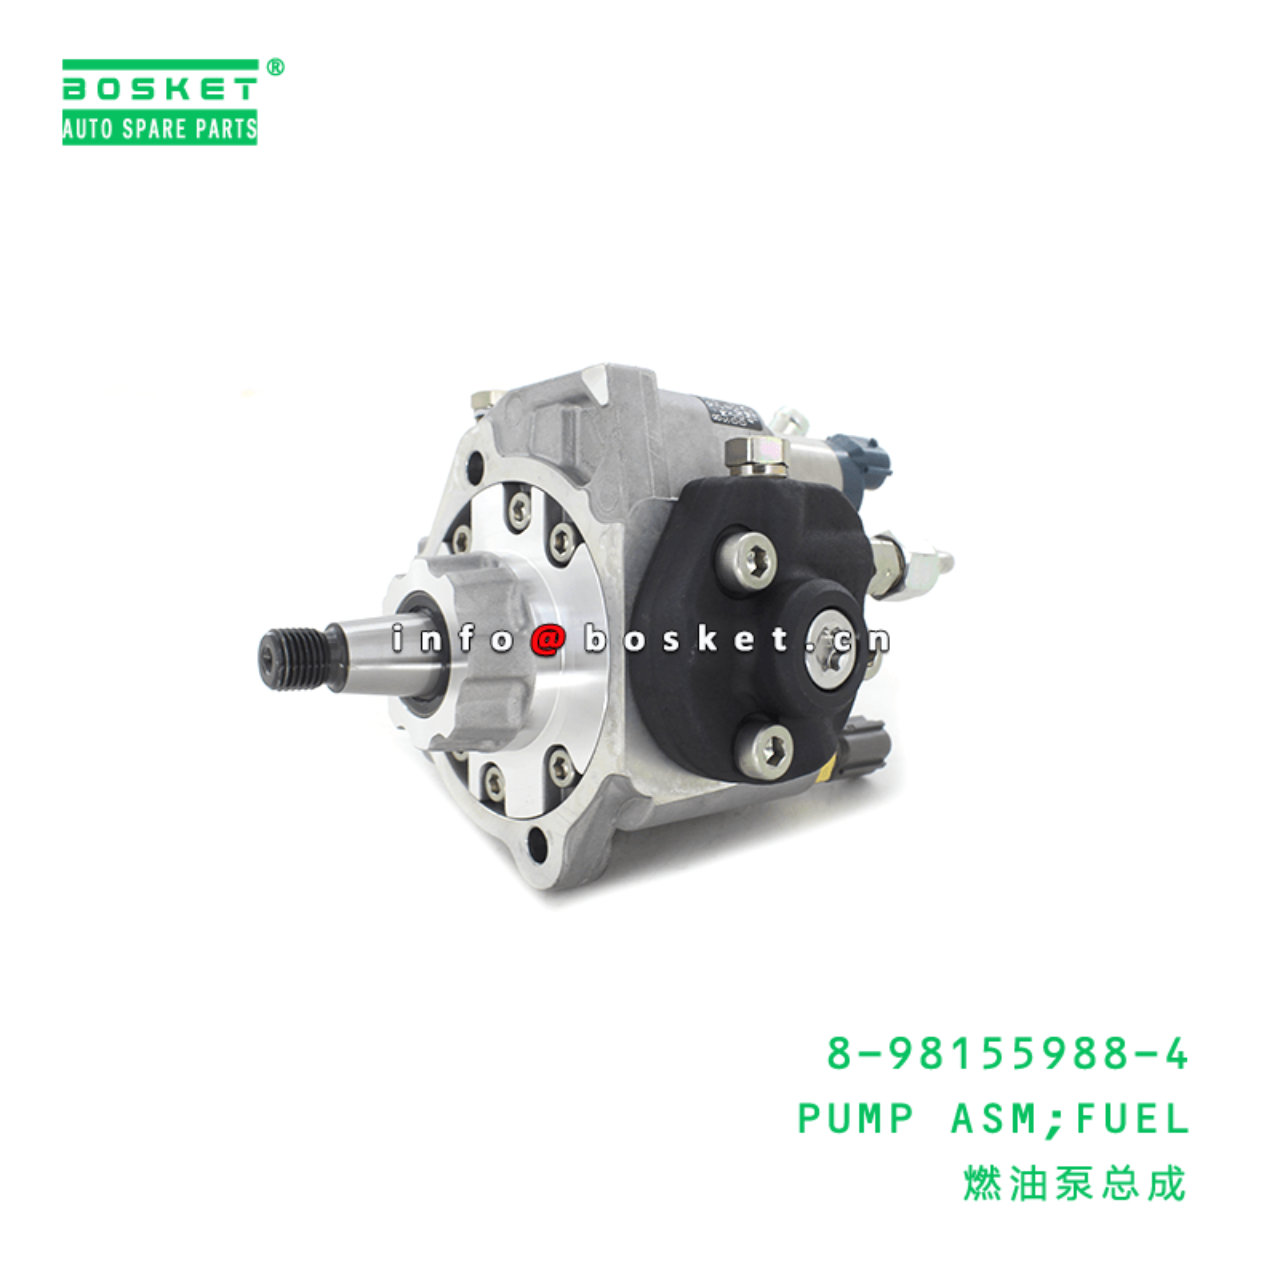  8-98155988-4 Fuel Pump Assembly 8981559884 Suitable For ISUZU TFR 4JJ1